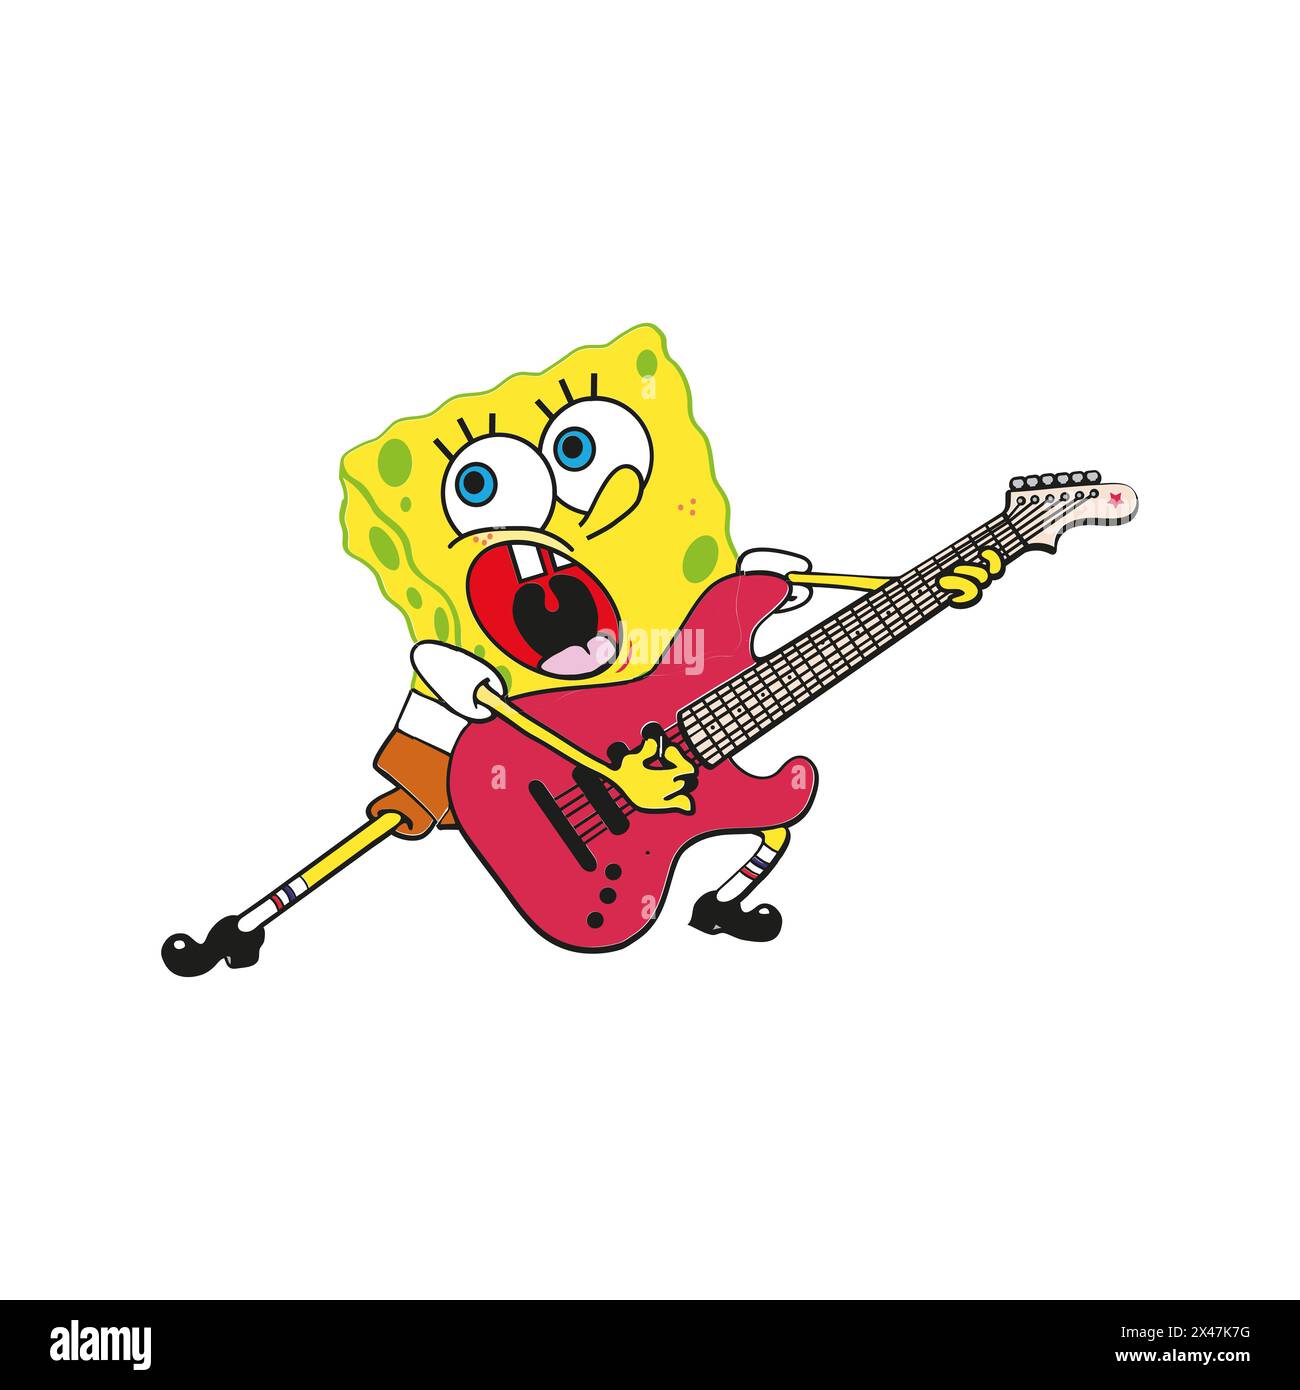 Spongebob squarepants personnage jouant une illustration vectorielle de musique de guitare Illustration de Vecteur